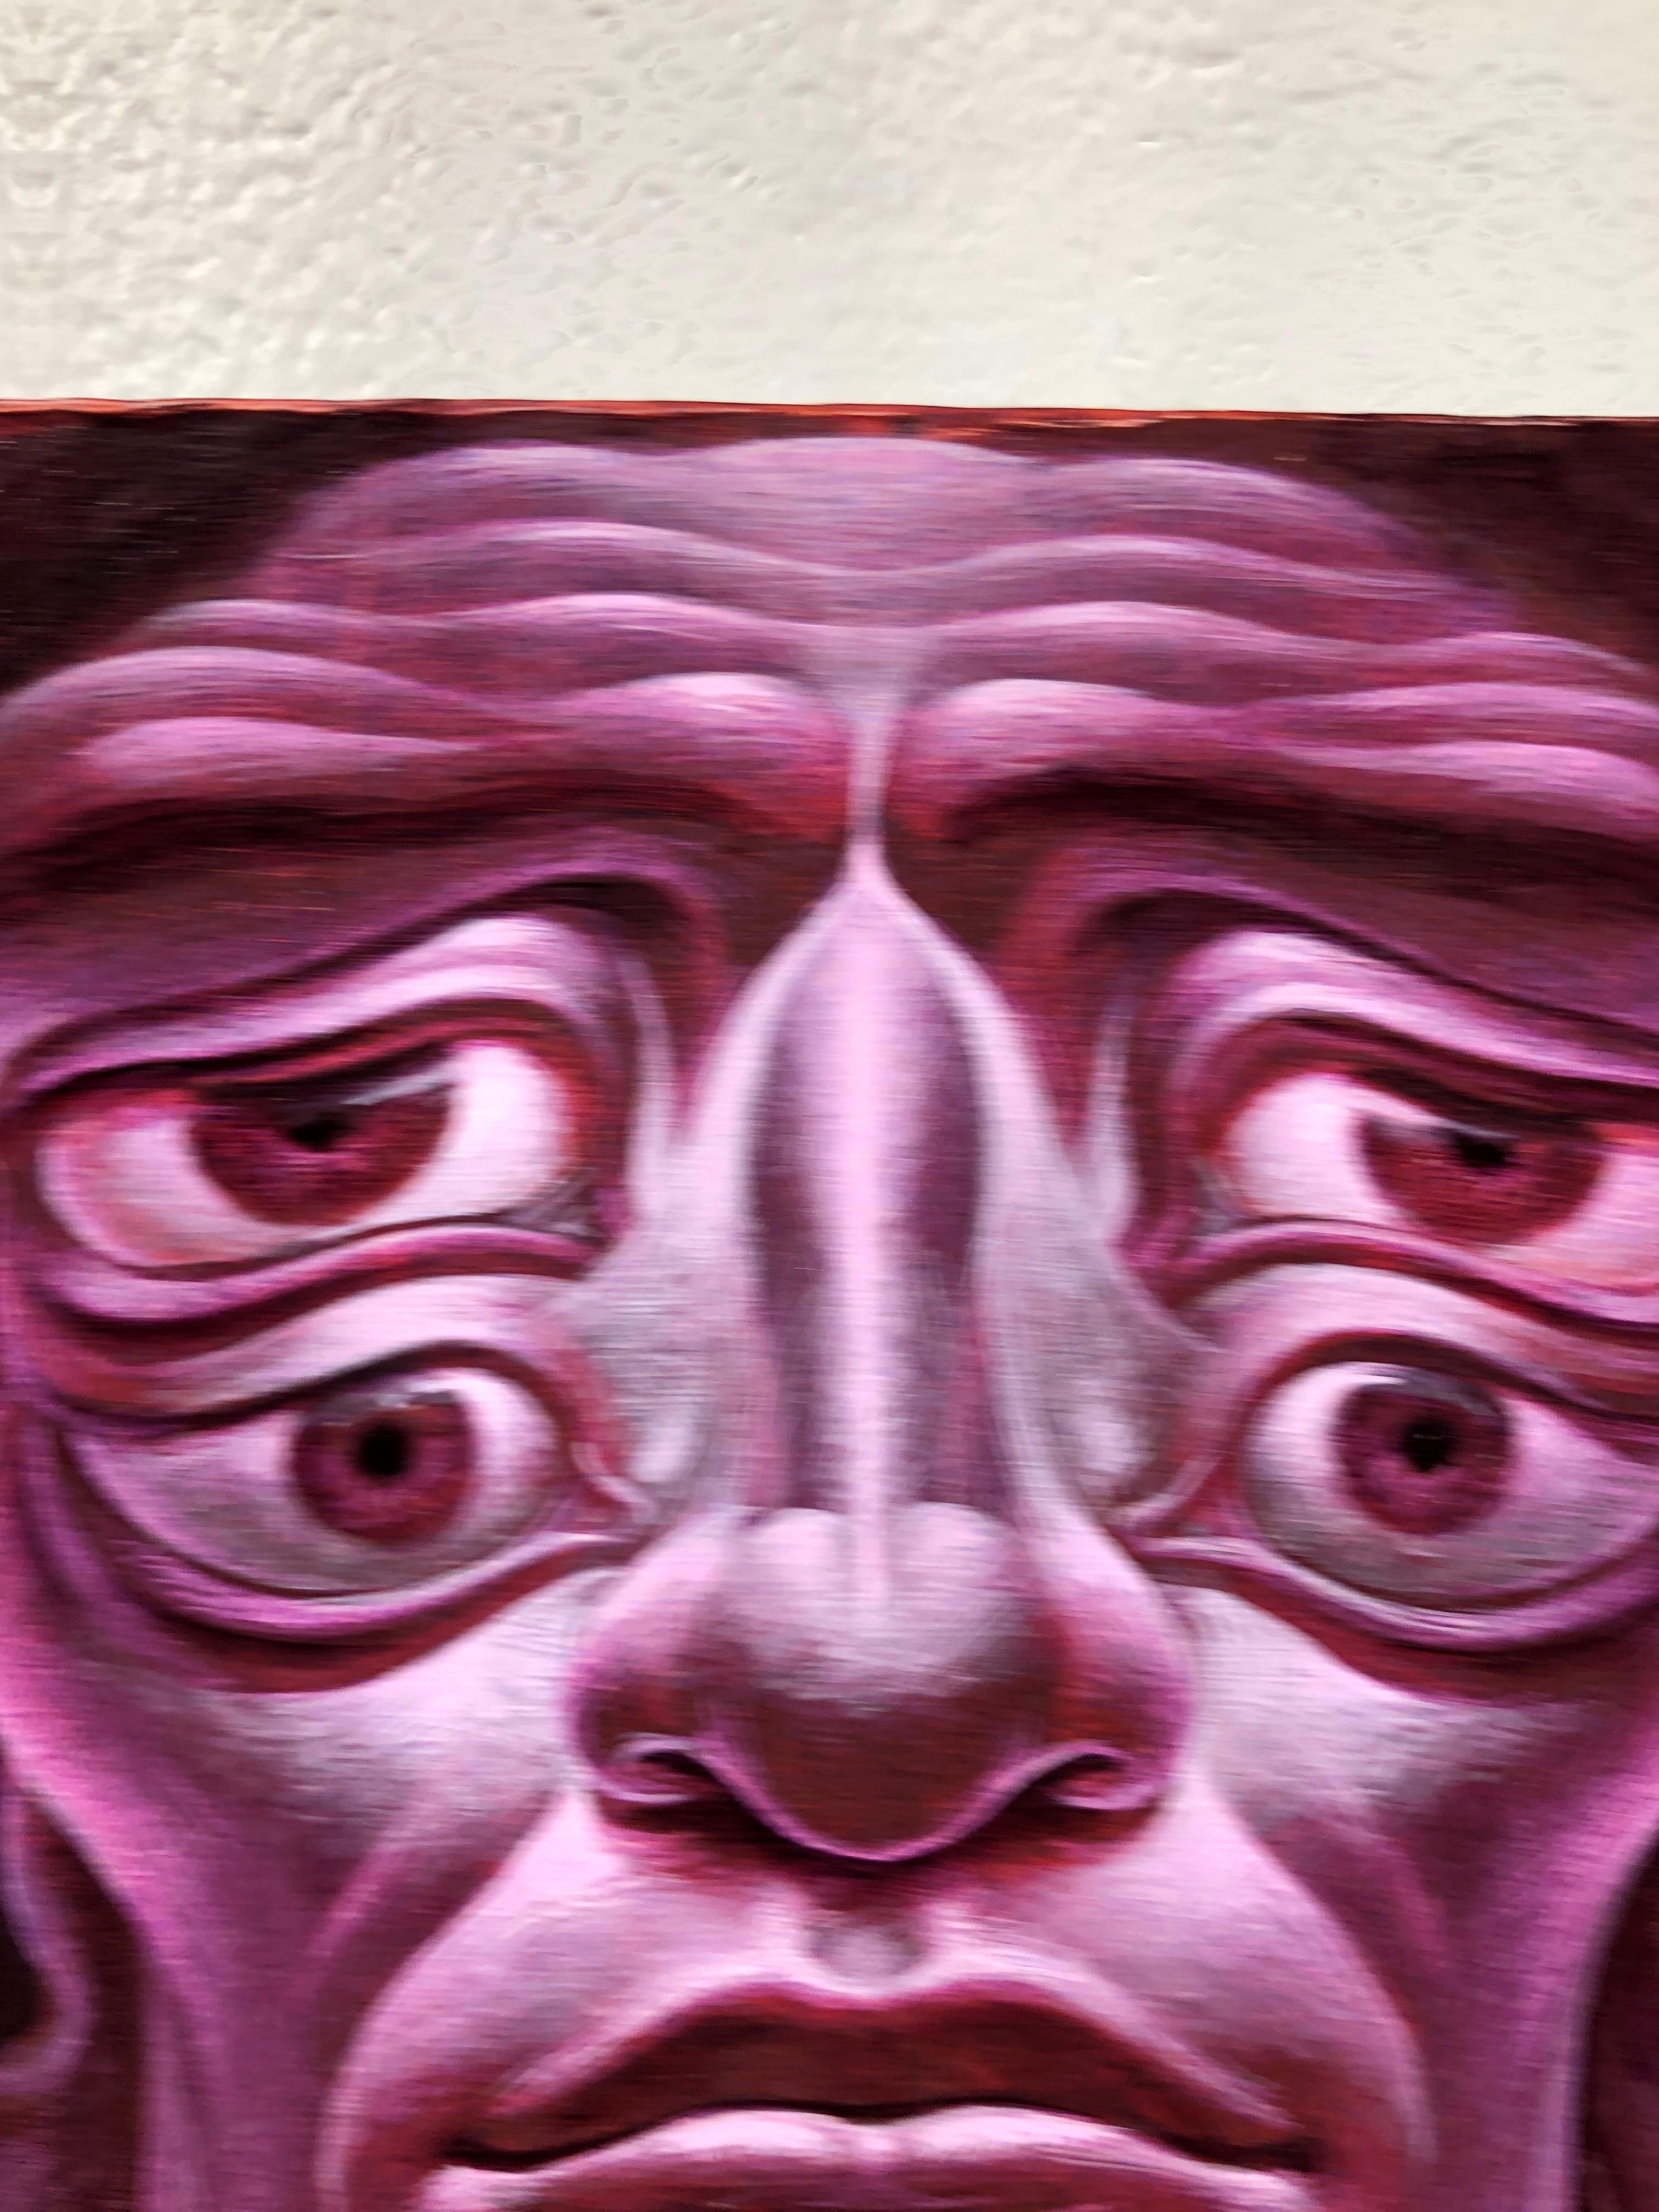 Oliver Hazard Benson
Totemischer Arhat
acryl auf Platte
9h x 7w in
22.86h x 17.78w cm
OB0111

Oliver Hazards Gemälde entstehen direkt aus seiner Vorstellungskraft und beschäftigen sich mit einer Mischung aus Bildern, die er auf seinen Reisen und in